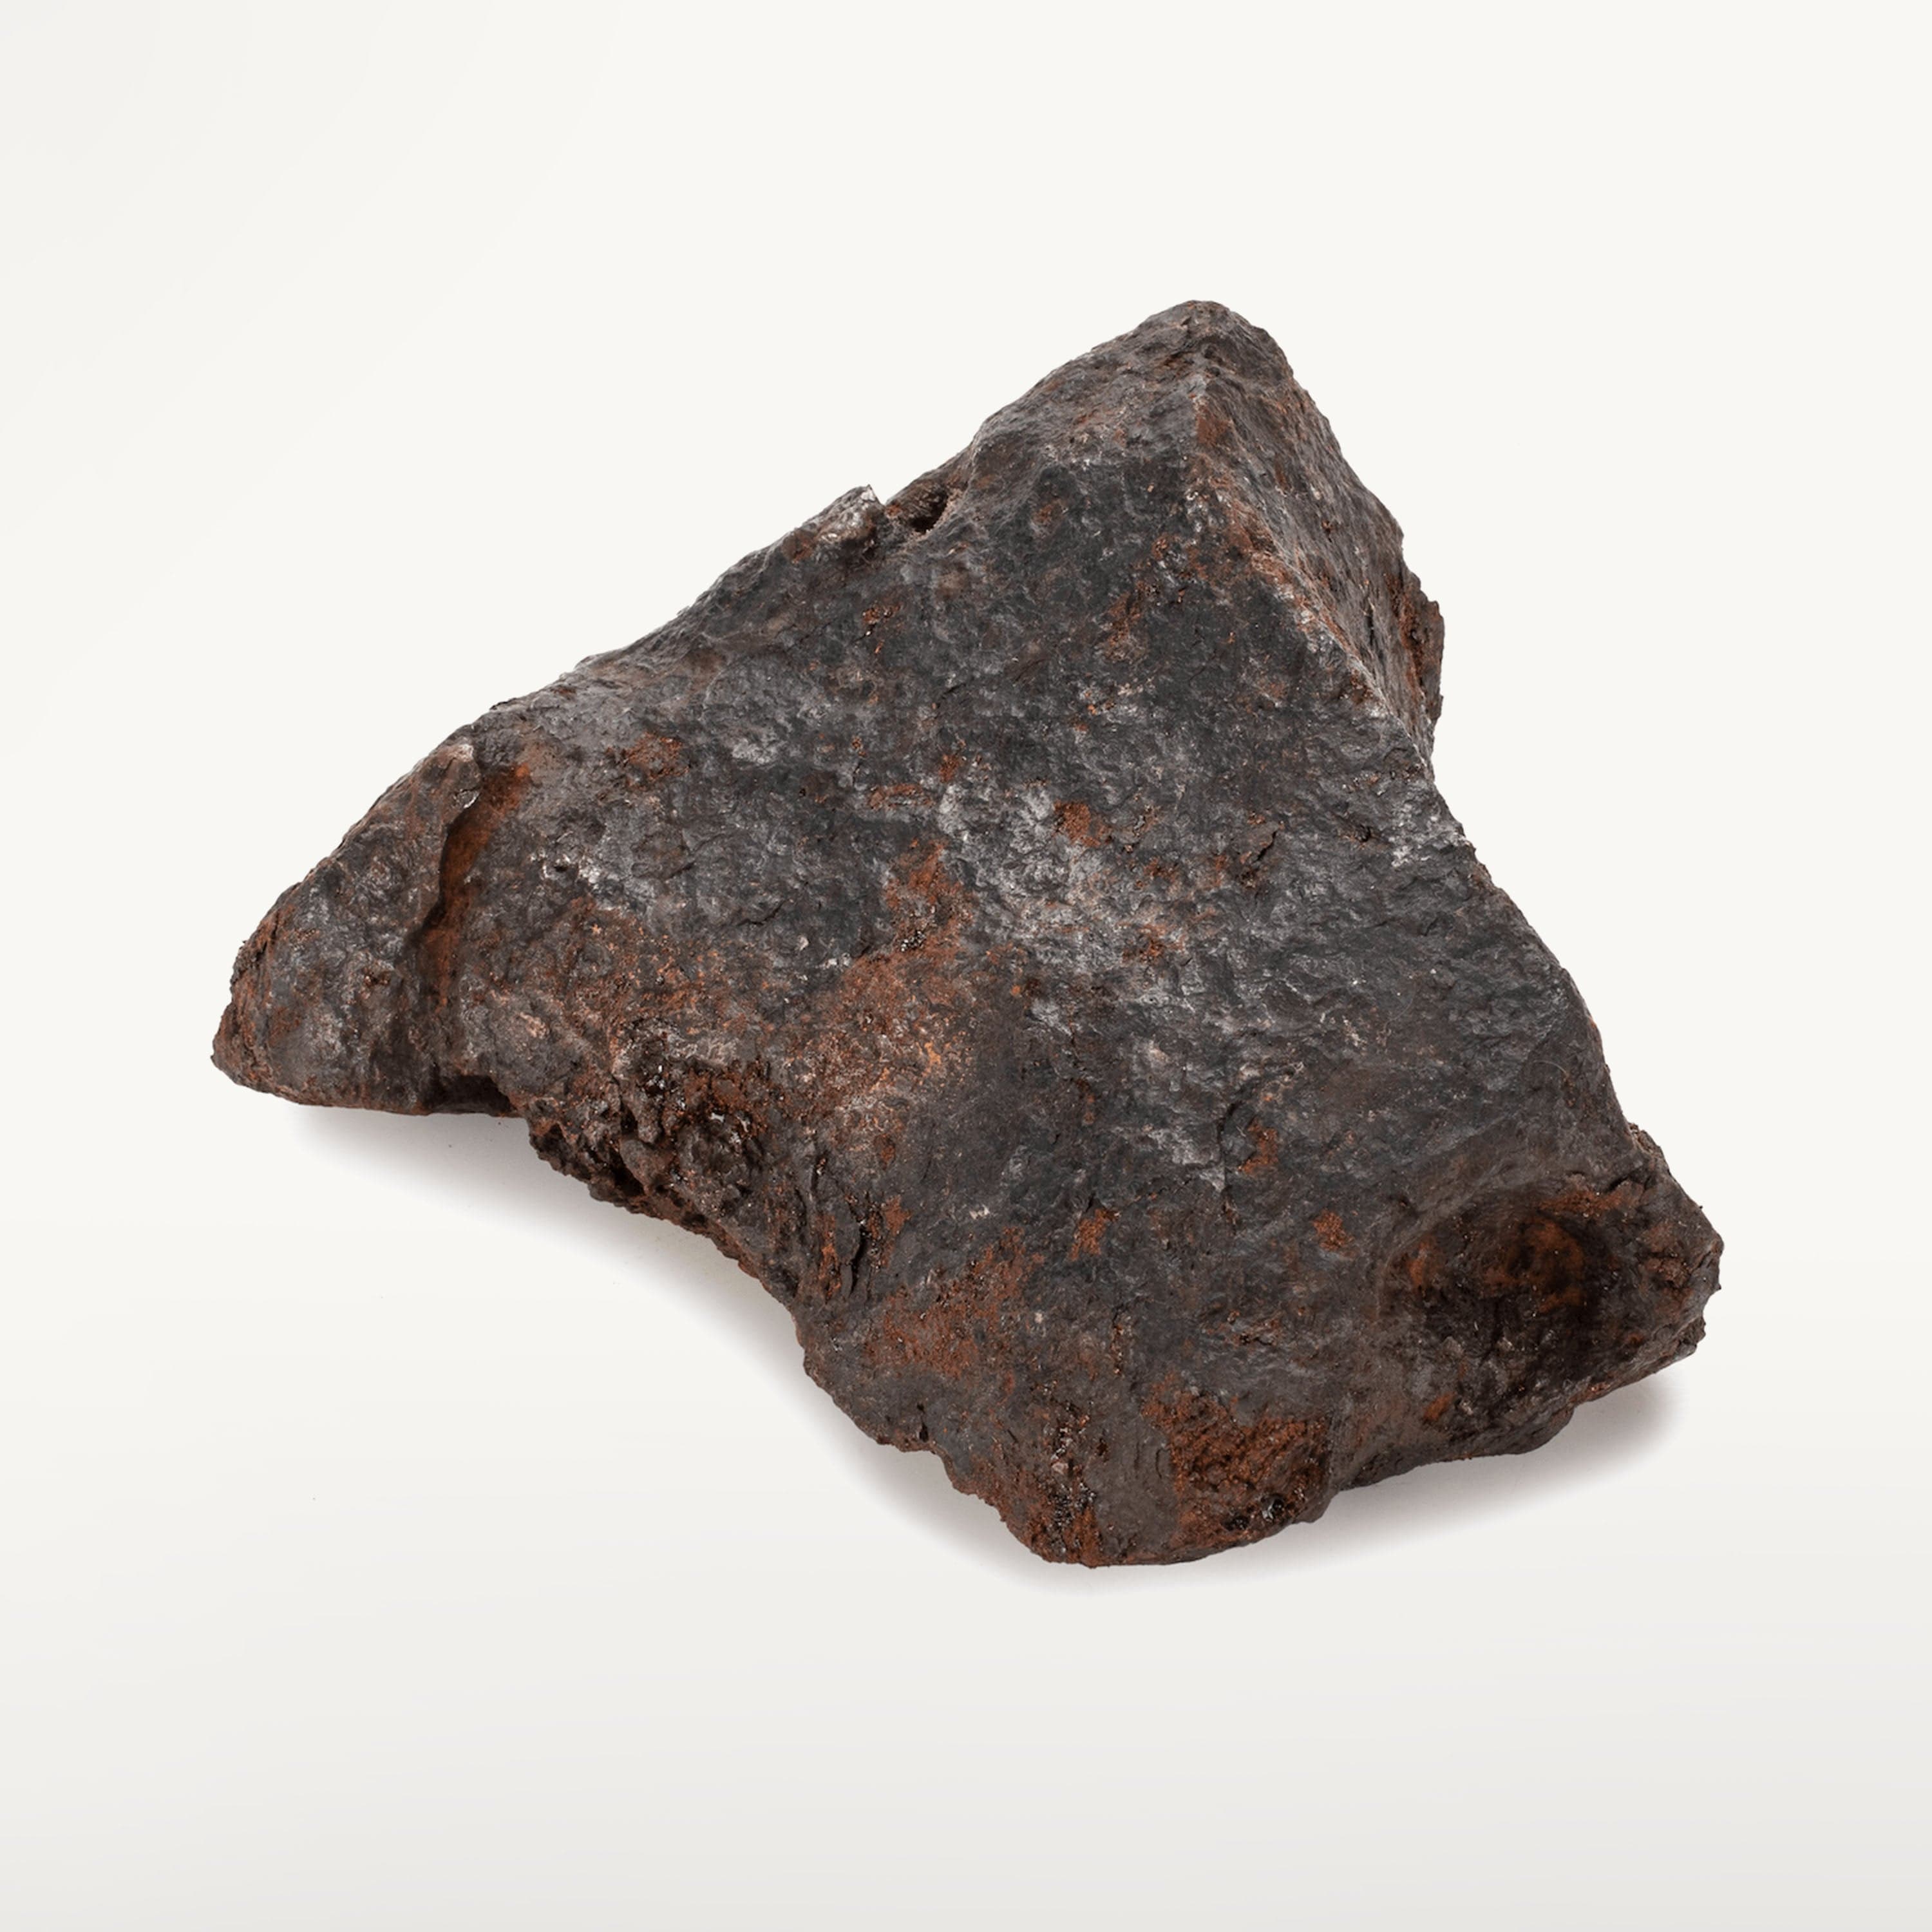 Del Natural Sale KALIFANO for - kilos Meteorite Iron 2.2 Campo | Cielo